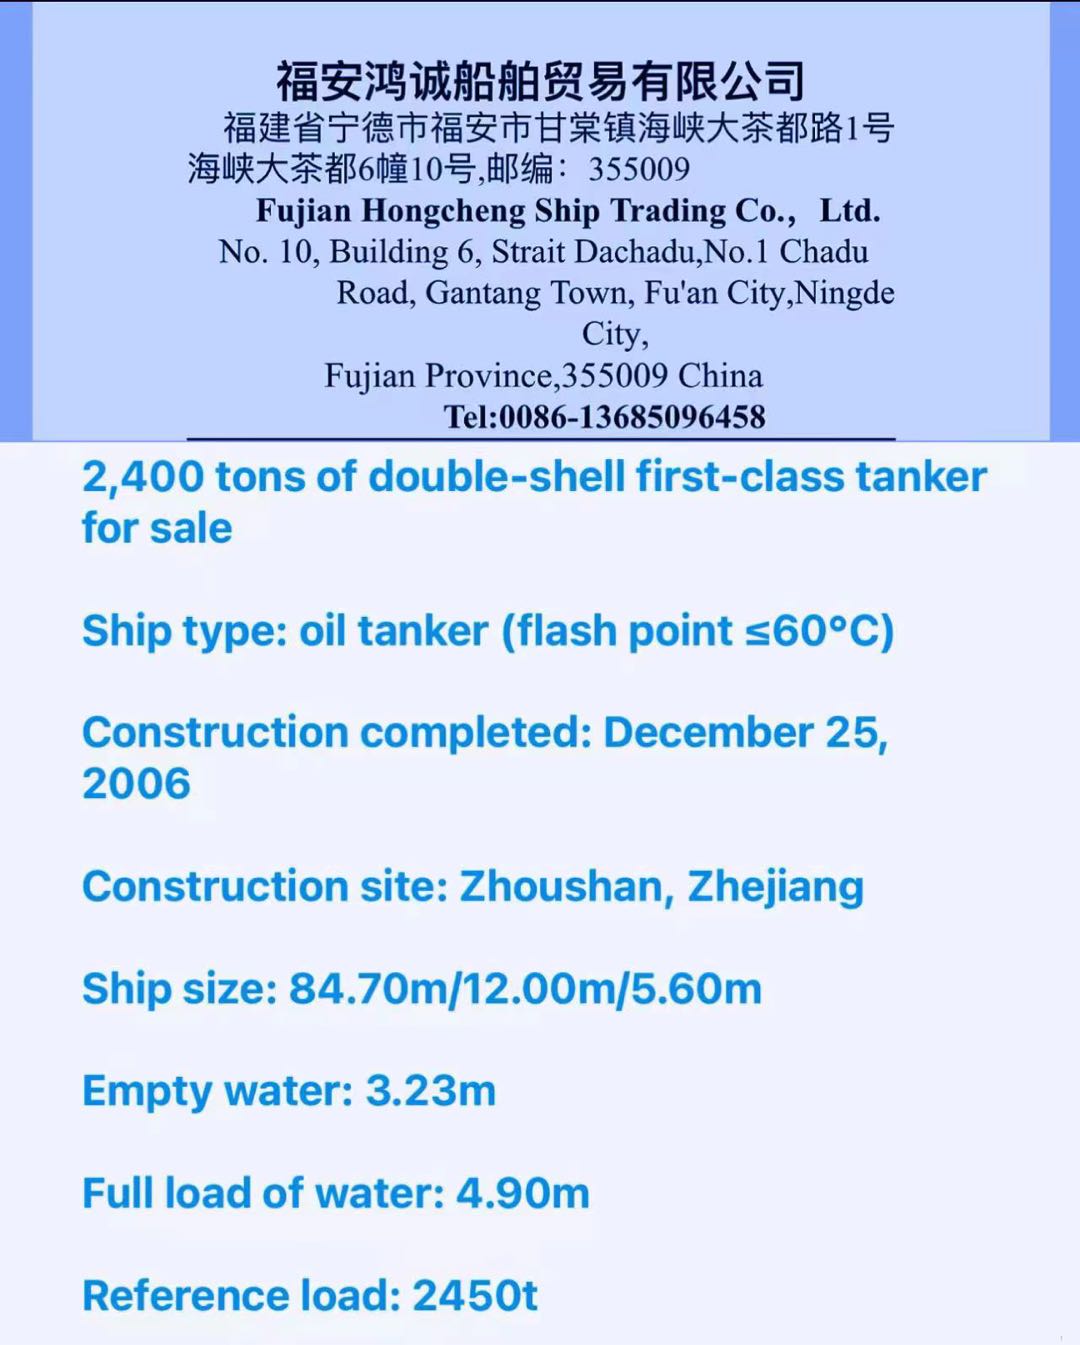 出售2400吨双壳一级油船带加温 船舶类型：油船（闪点≤60℃） 建造完工：2006年12月25日 建造地点：浙江舟山